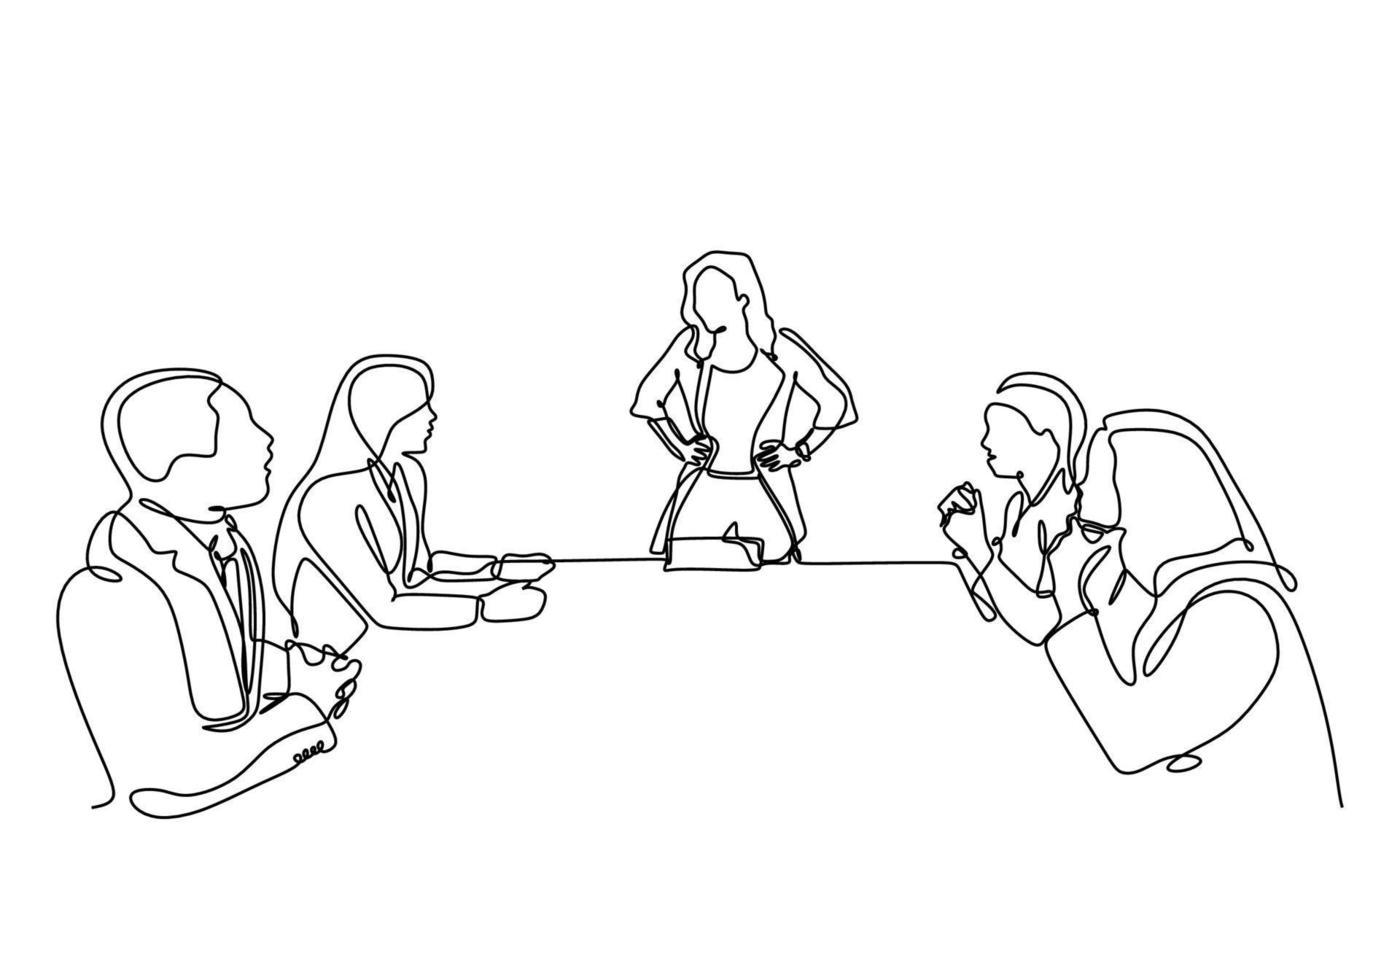 .kontinuierliche einzeilige Zeichnung eines Firmentreffens mit einer Frau als Führungsvektor. einzelne minimalismusskizze handgezeichnetes konzept des geschäftstreffens von leuten, die sitzen, führen eine diskussion vektor